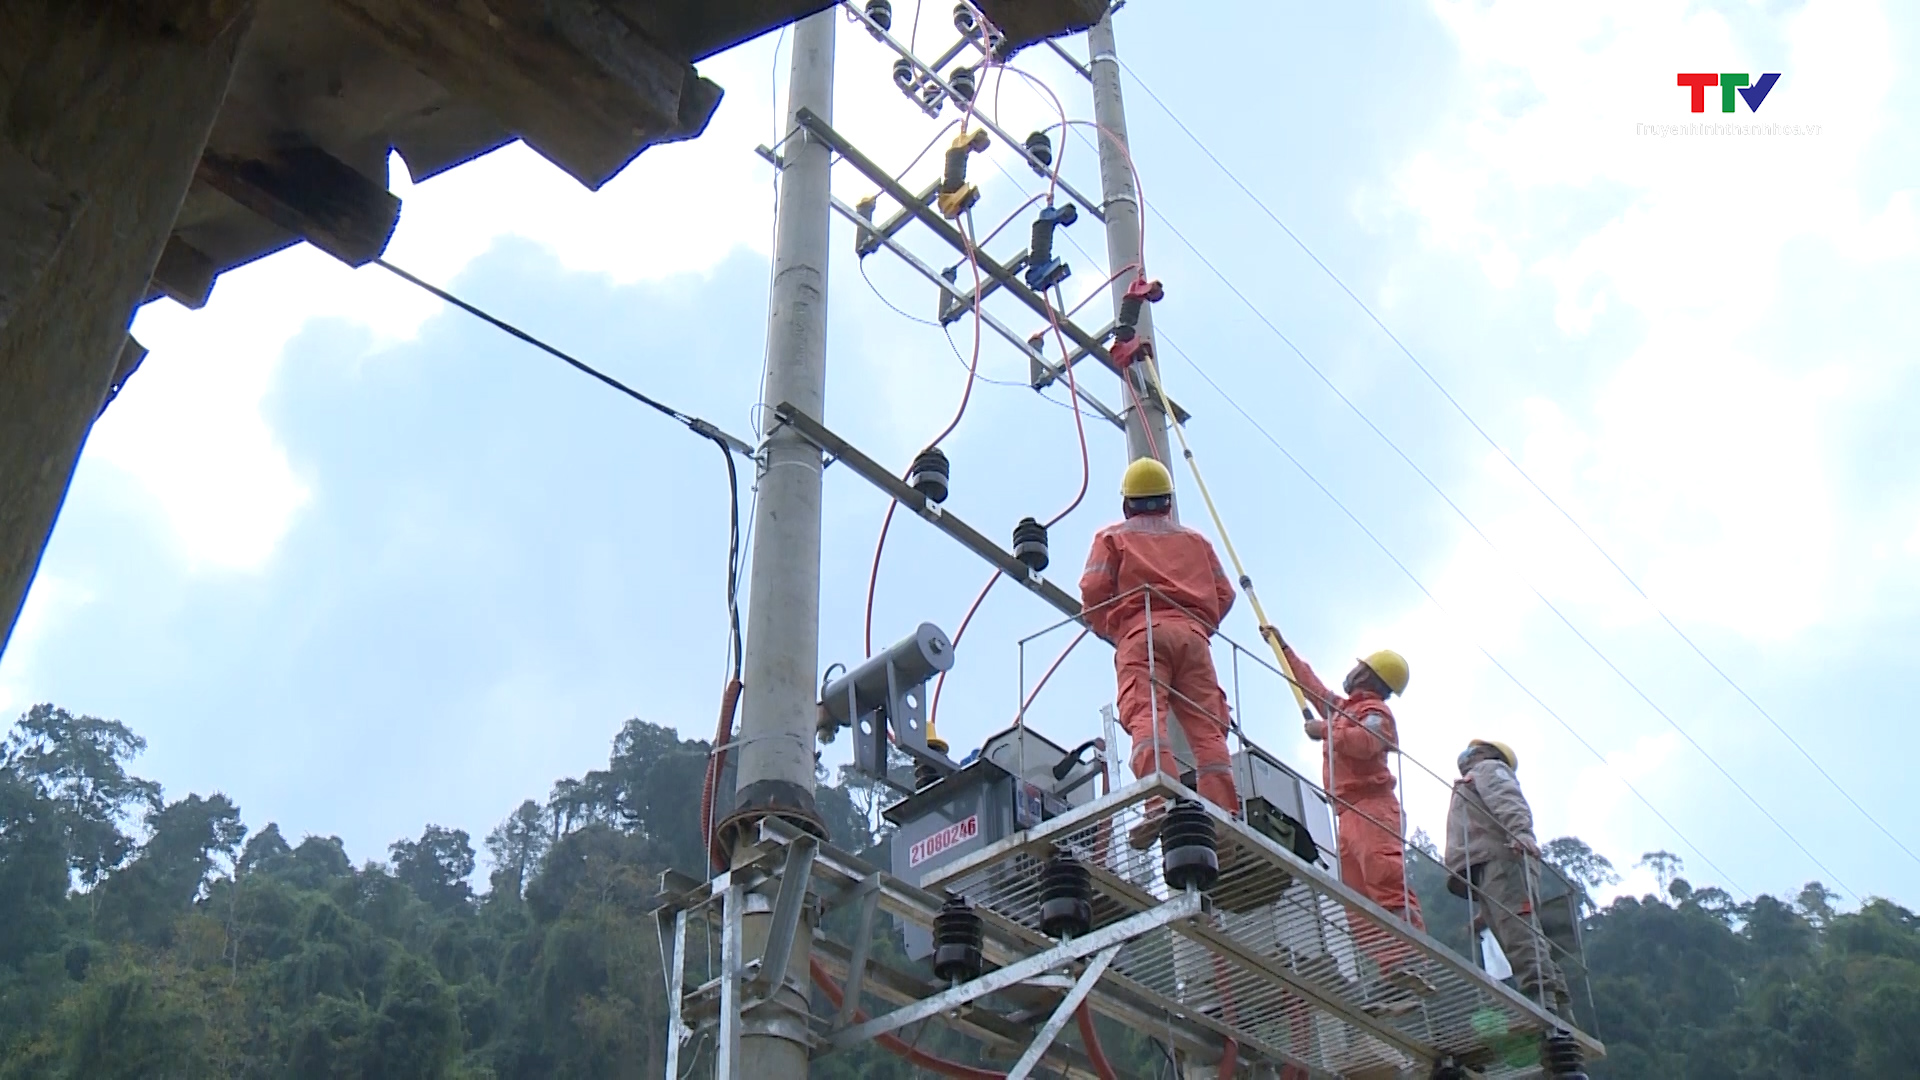 Khắc phục khó khăn hoàn thành tiêu chí điện trong xây dựng nông thôn mới ở các huyện miền núi Thanh Hoá - Ảnh 4.